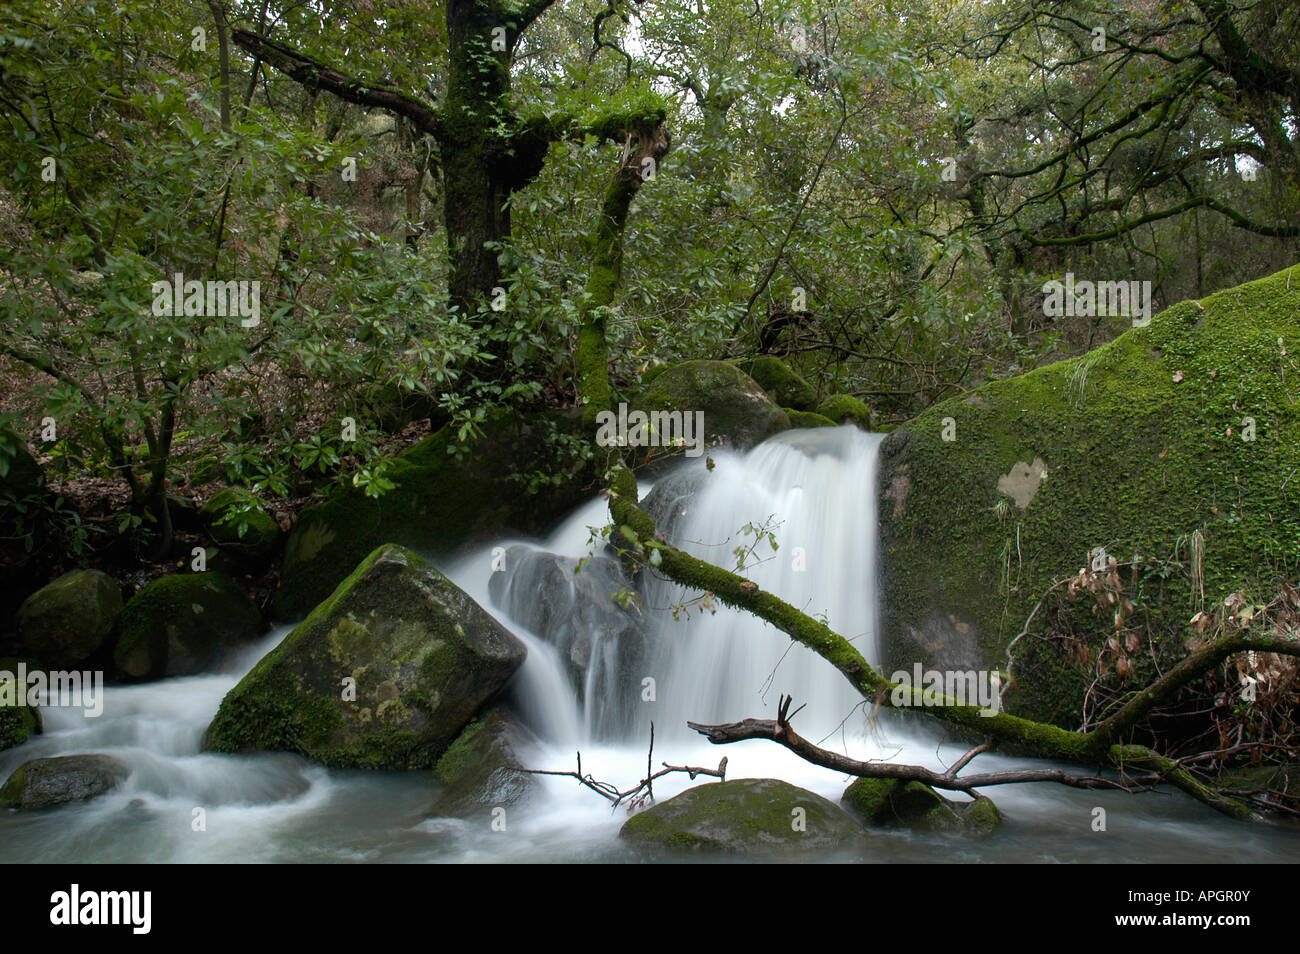 Arroyo-cascada en el Parque Natural de los Alcornocales Stock Photo